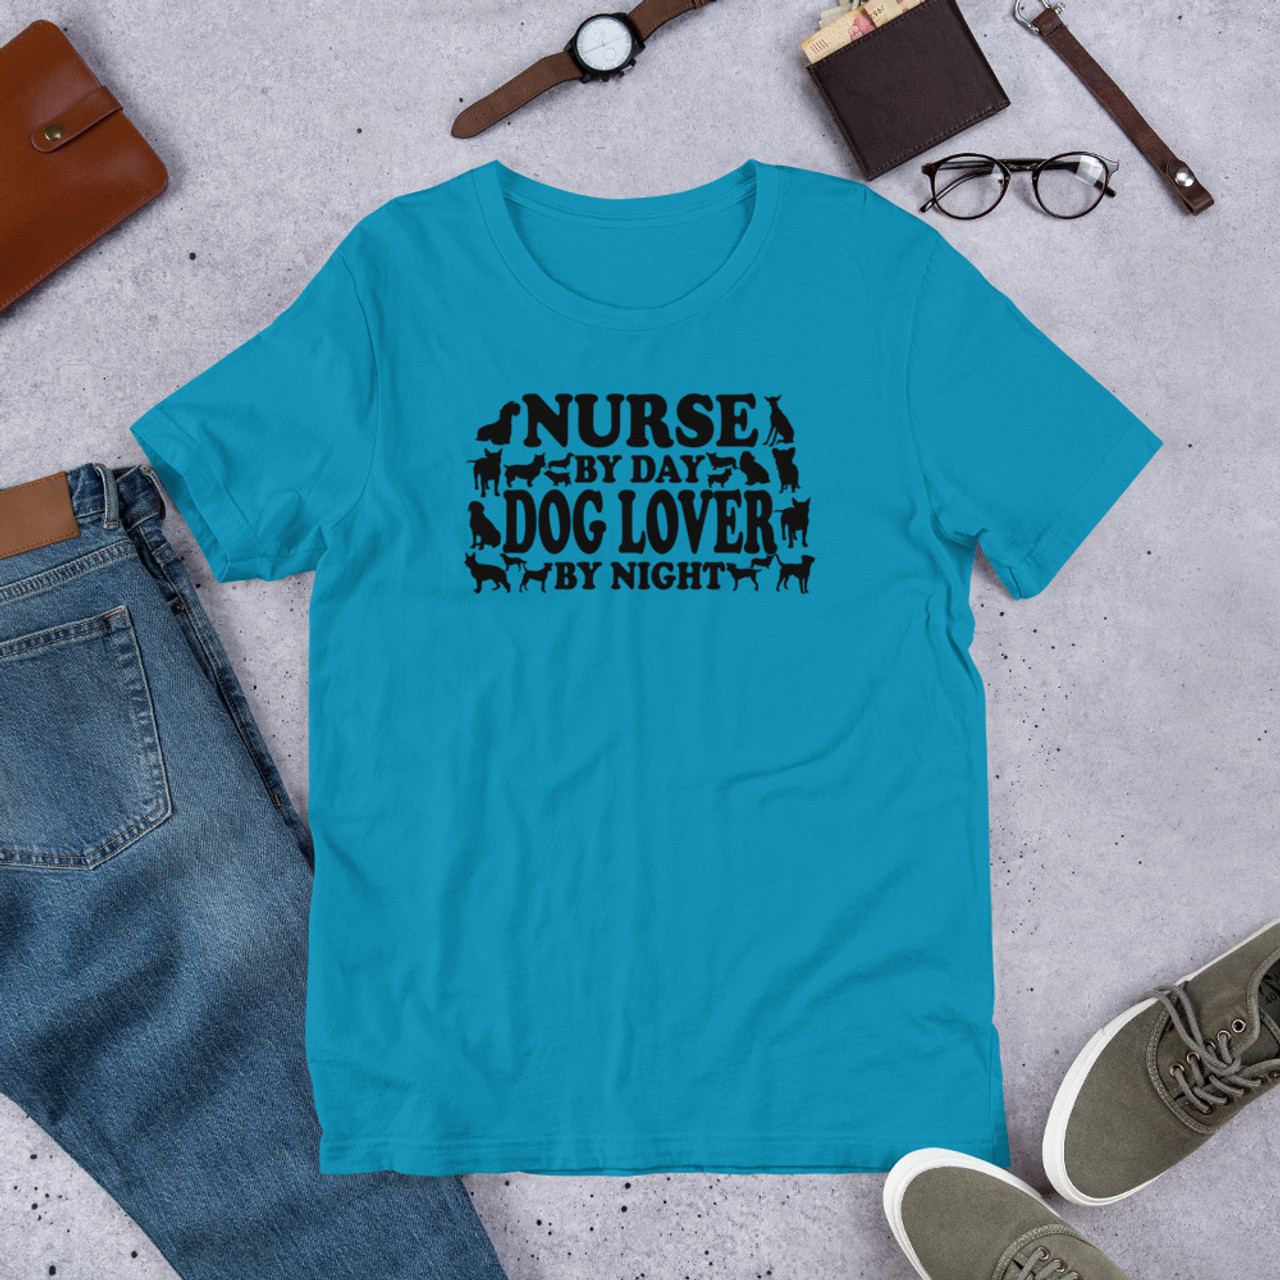 Aqua T-Shirt - Bella + Canvas 3001 Nurse By Day Dog Lover By Night